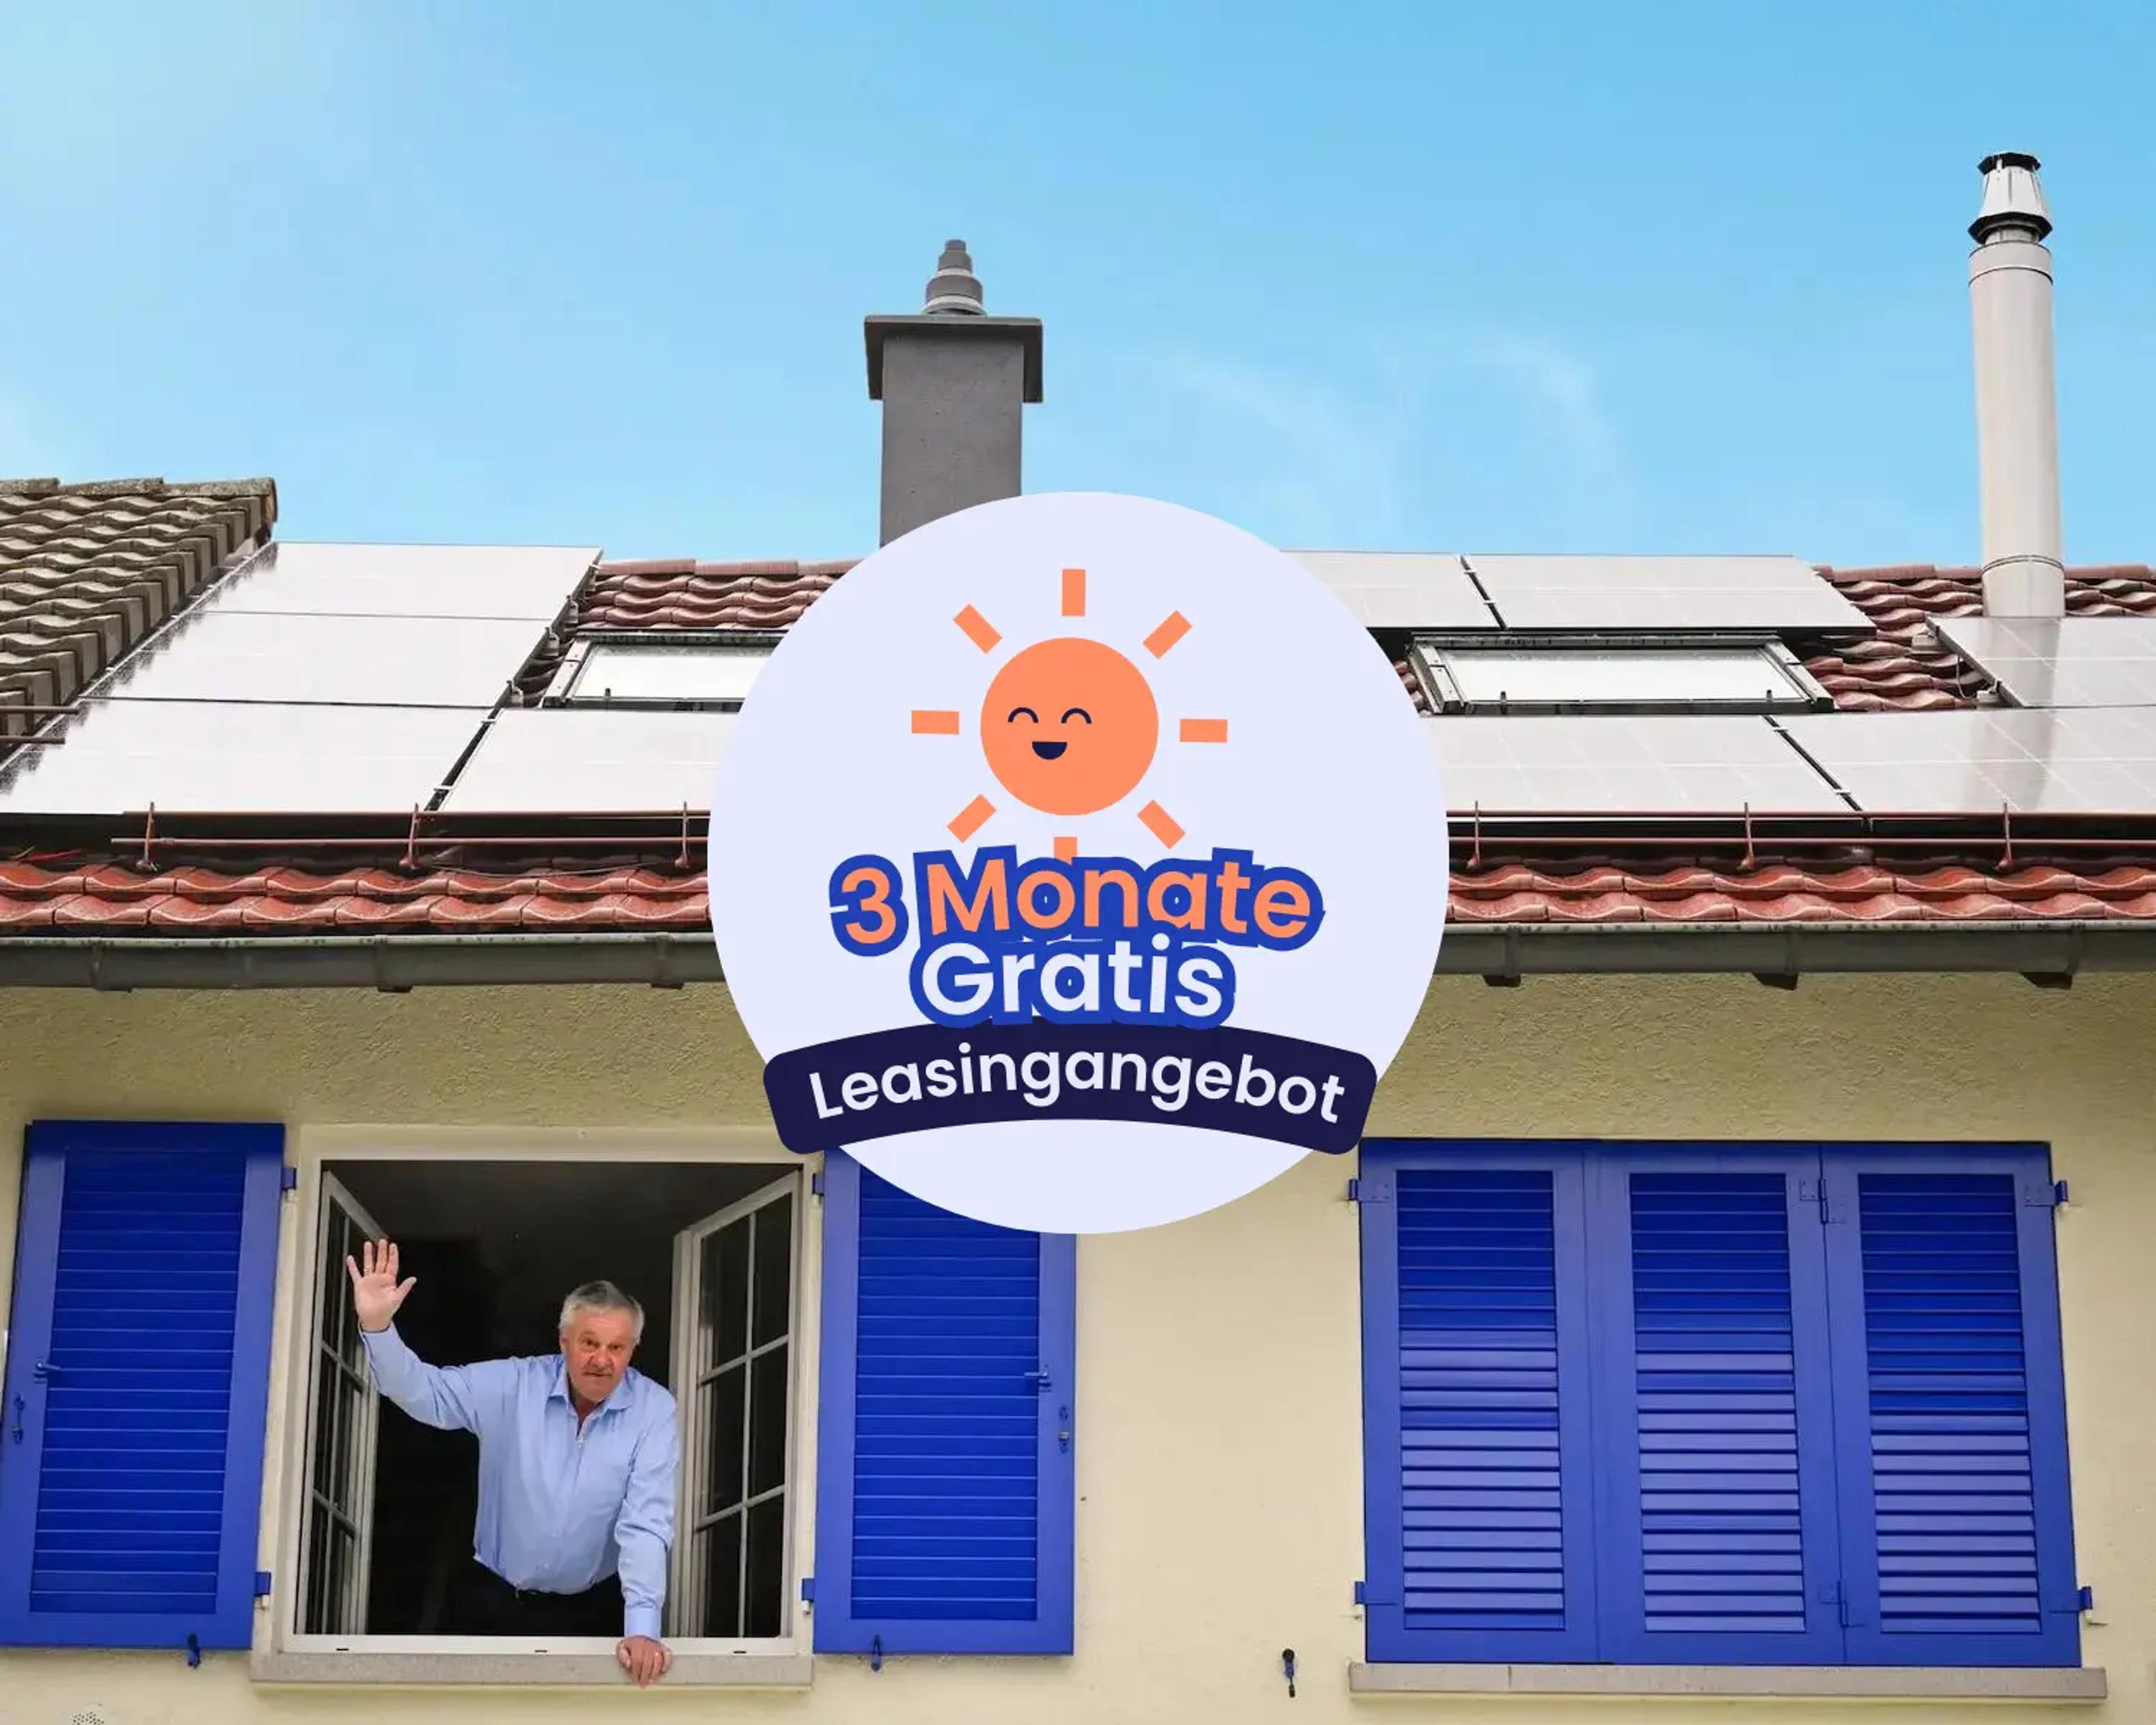 Ein Mann winkt aus einem Fenster heraus, auf dem Dach eine Solaranlage.